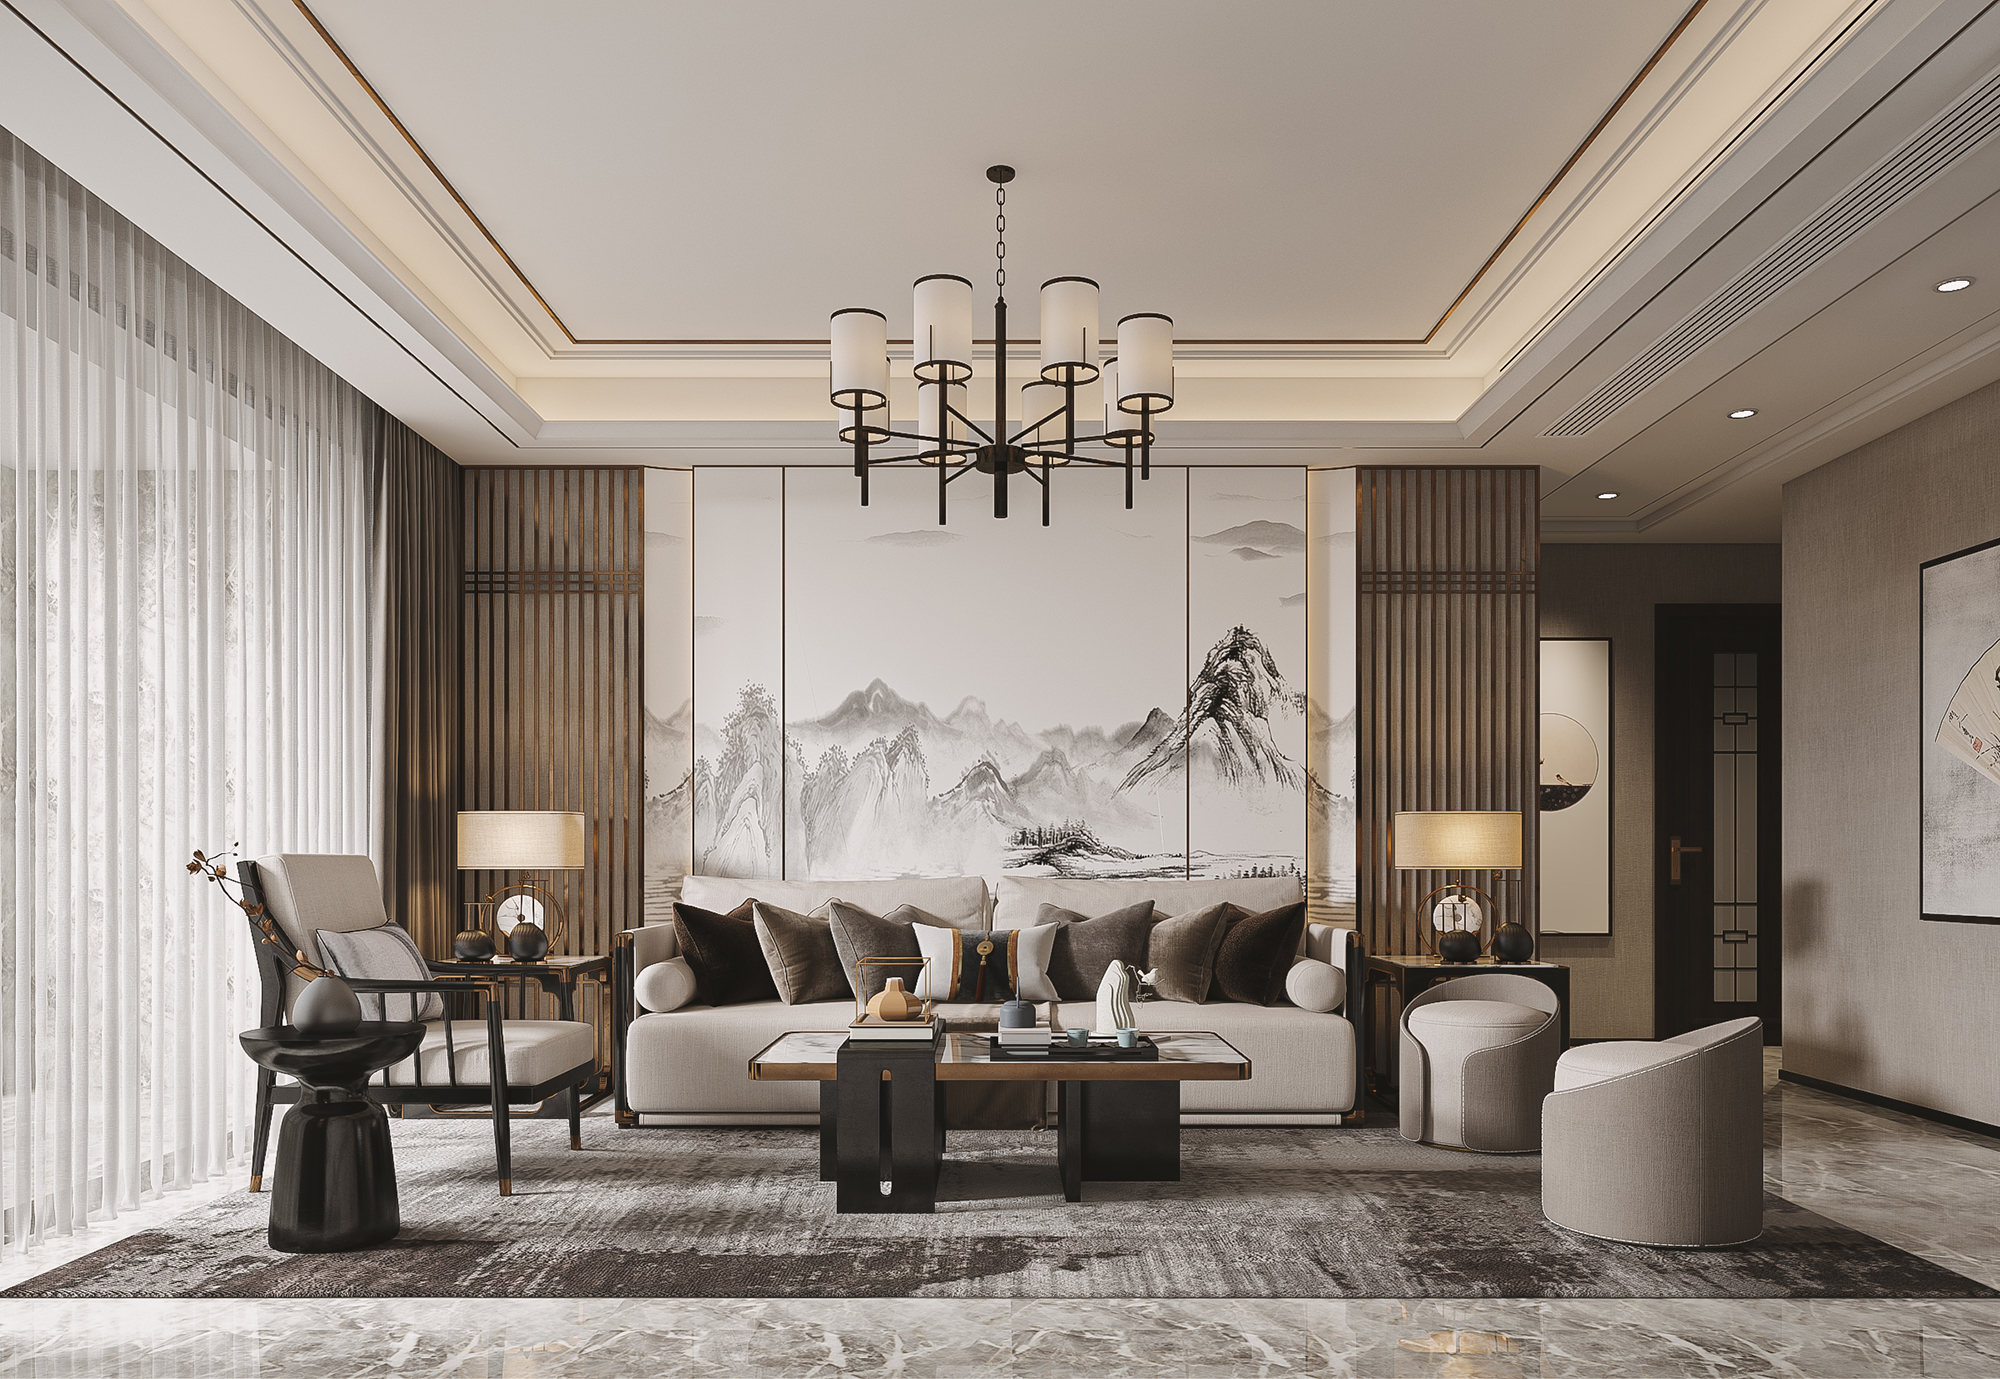 新中式风格惊艳亮相,知名设计师打造室内设计佳作